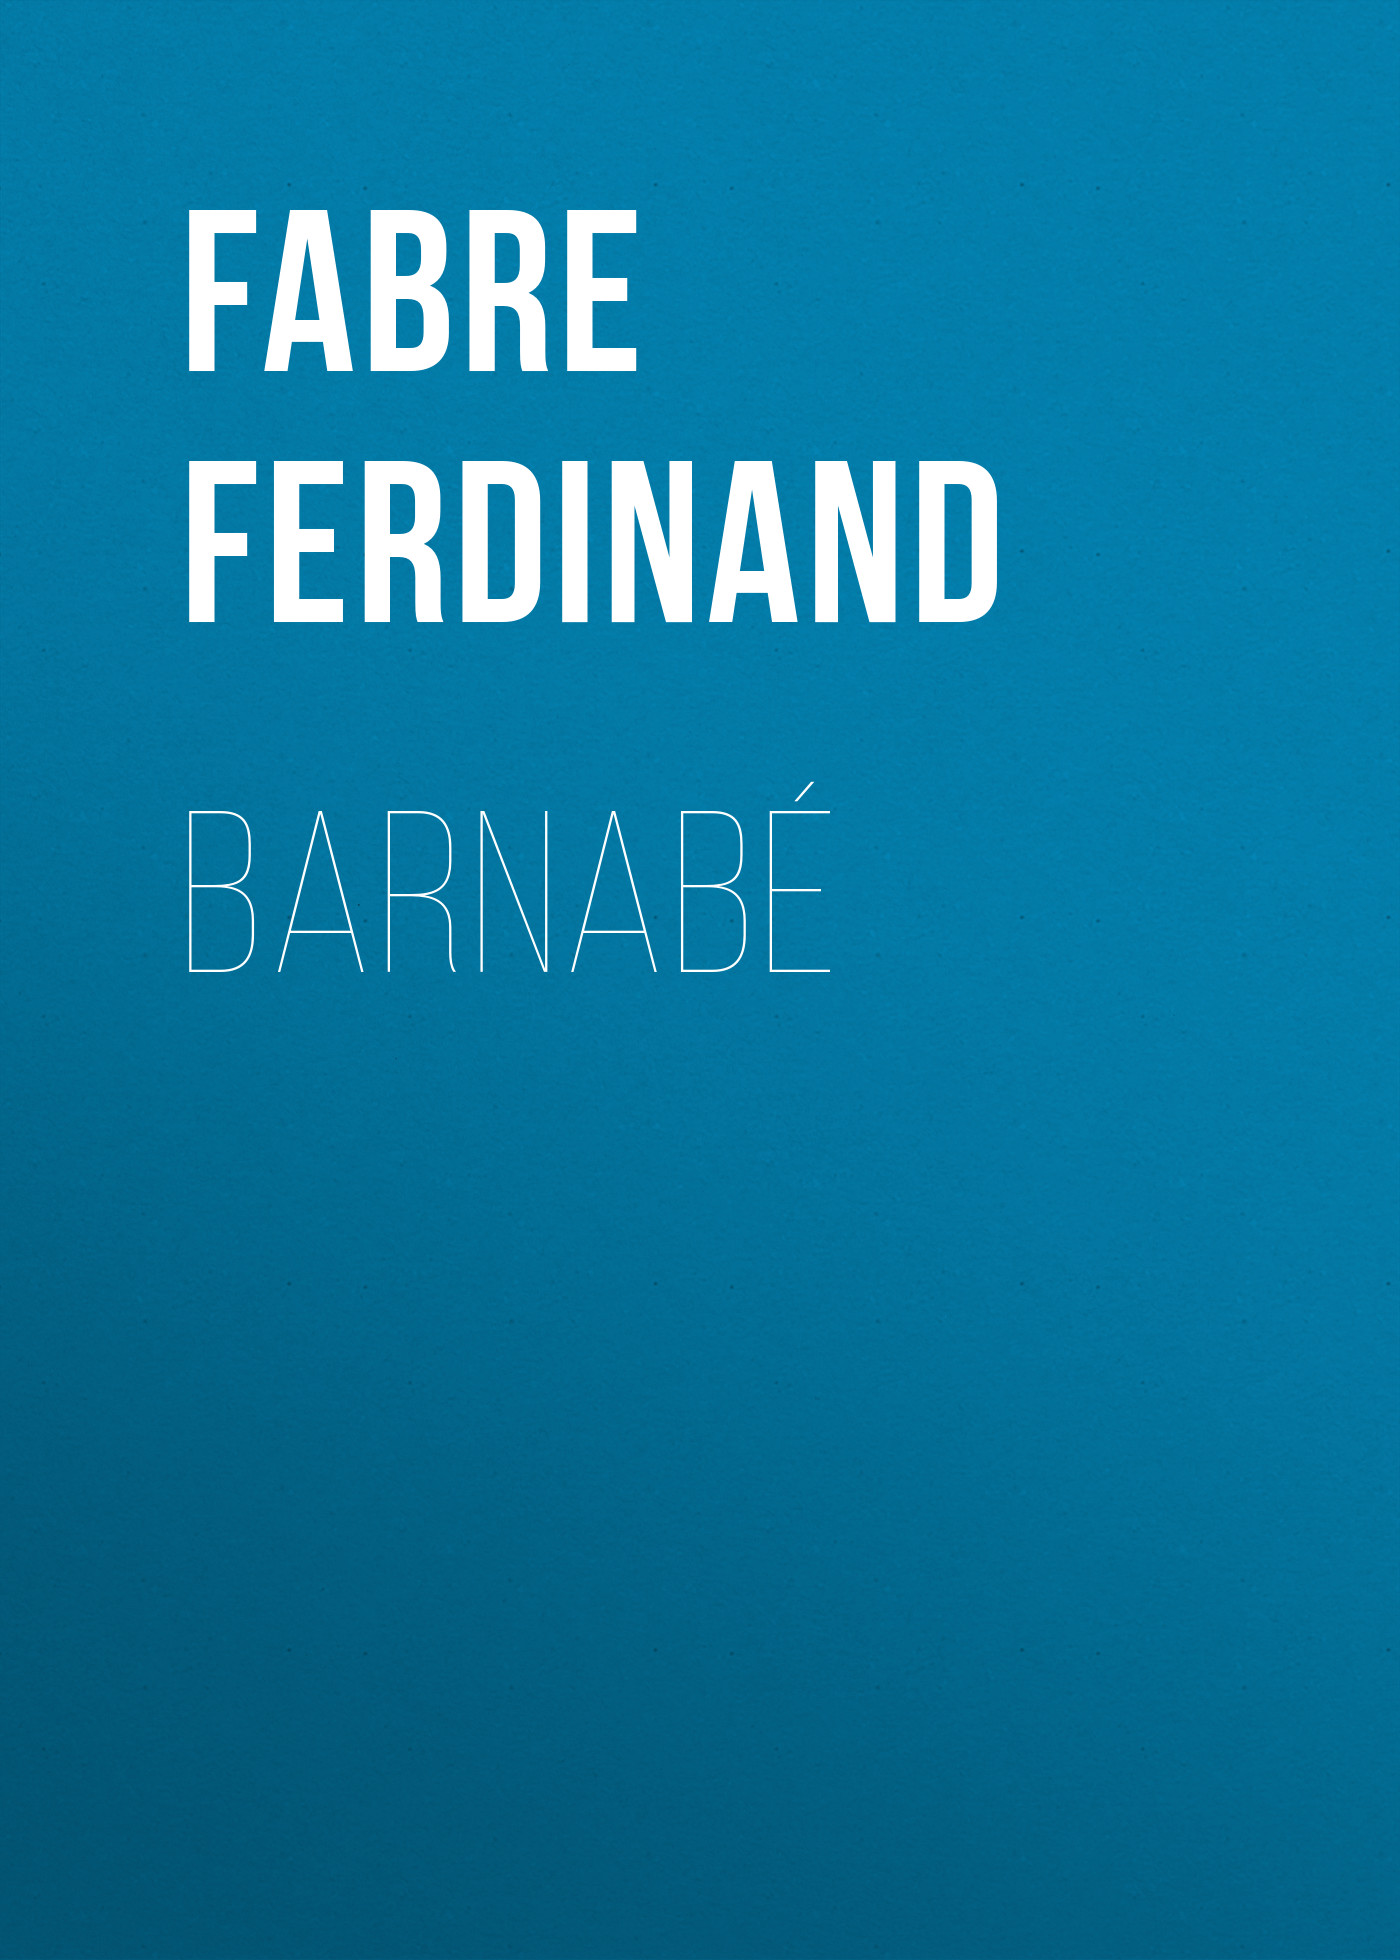 Книга Barnabé из серии , созданная Ferdinand Fabre, может относится к жанру Зарубежная старинная литература, Зарубежная классика. Стоимость электронной книги Barnabé с идентификатором 24713825 составляет 0 руб.